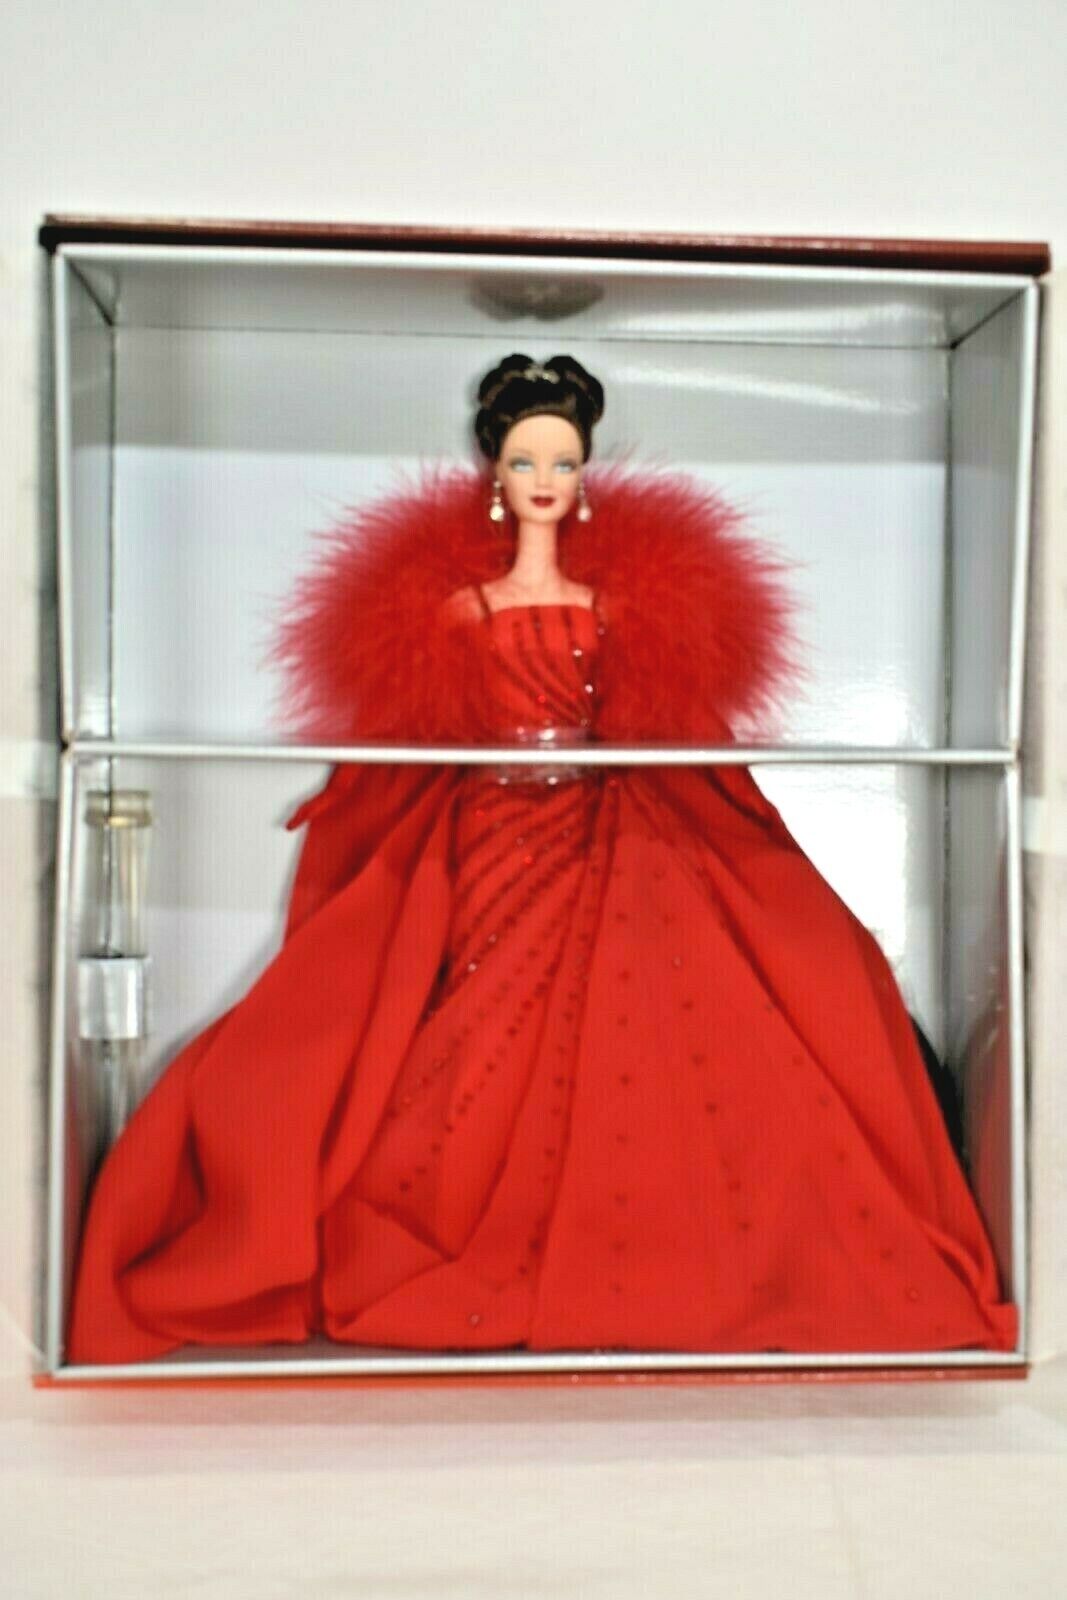 2000 Ferrari Barbie Edition Collectible 74299296086 | eBay